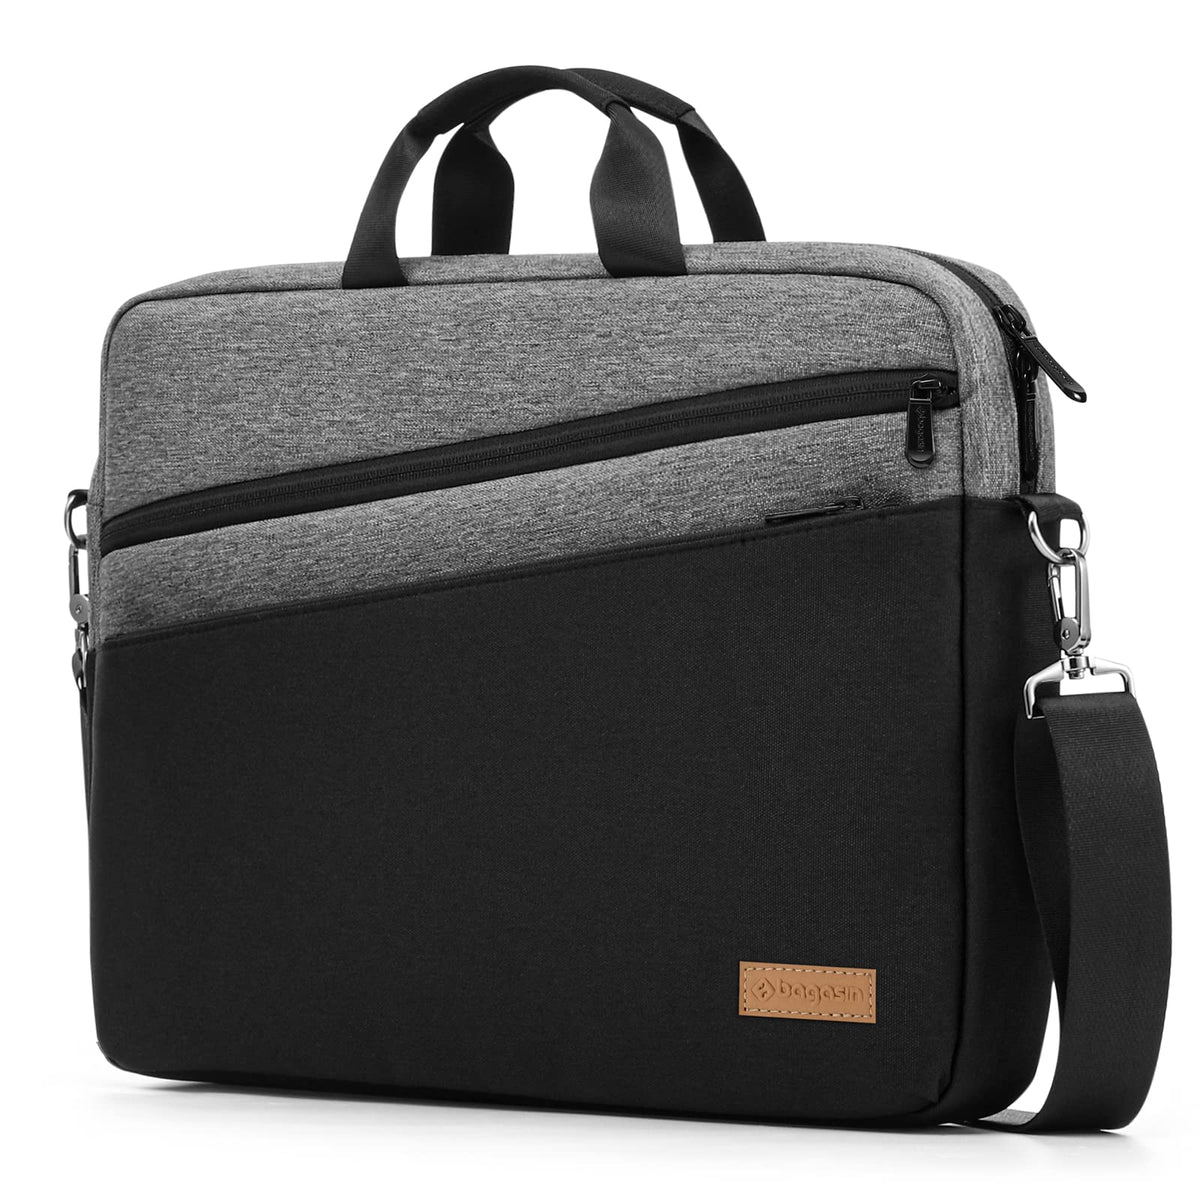 Bagasin 15 15.6 16 inch Laptop Computer PC Shoulder Bag Carrying Case,